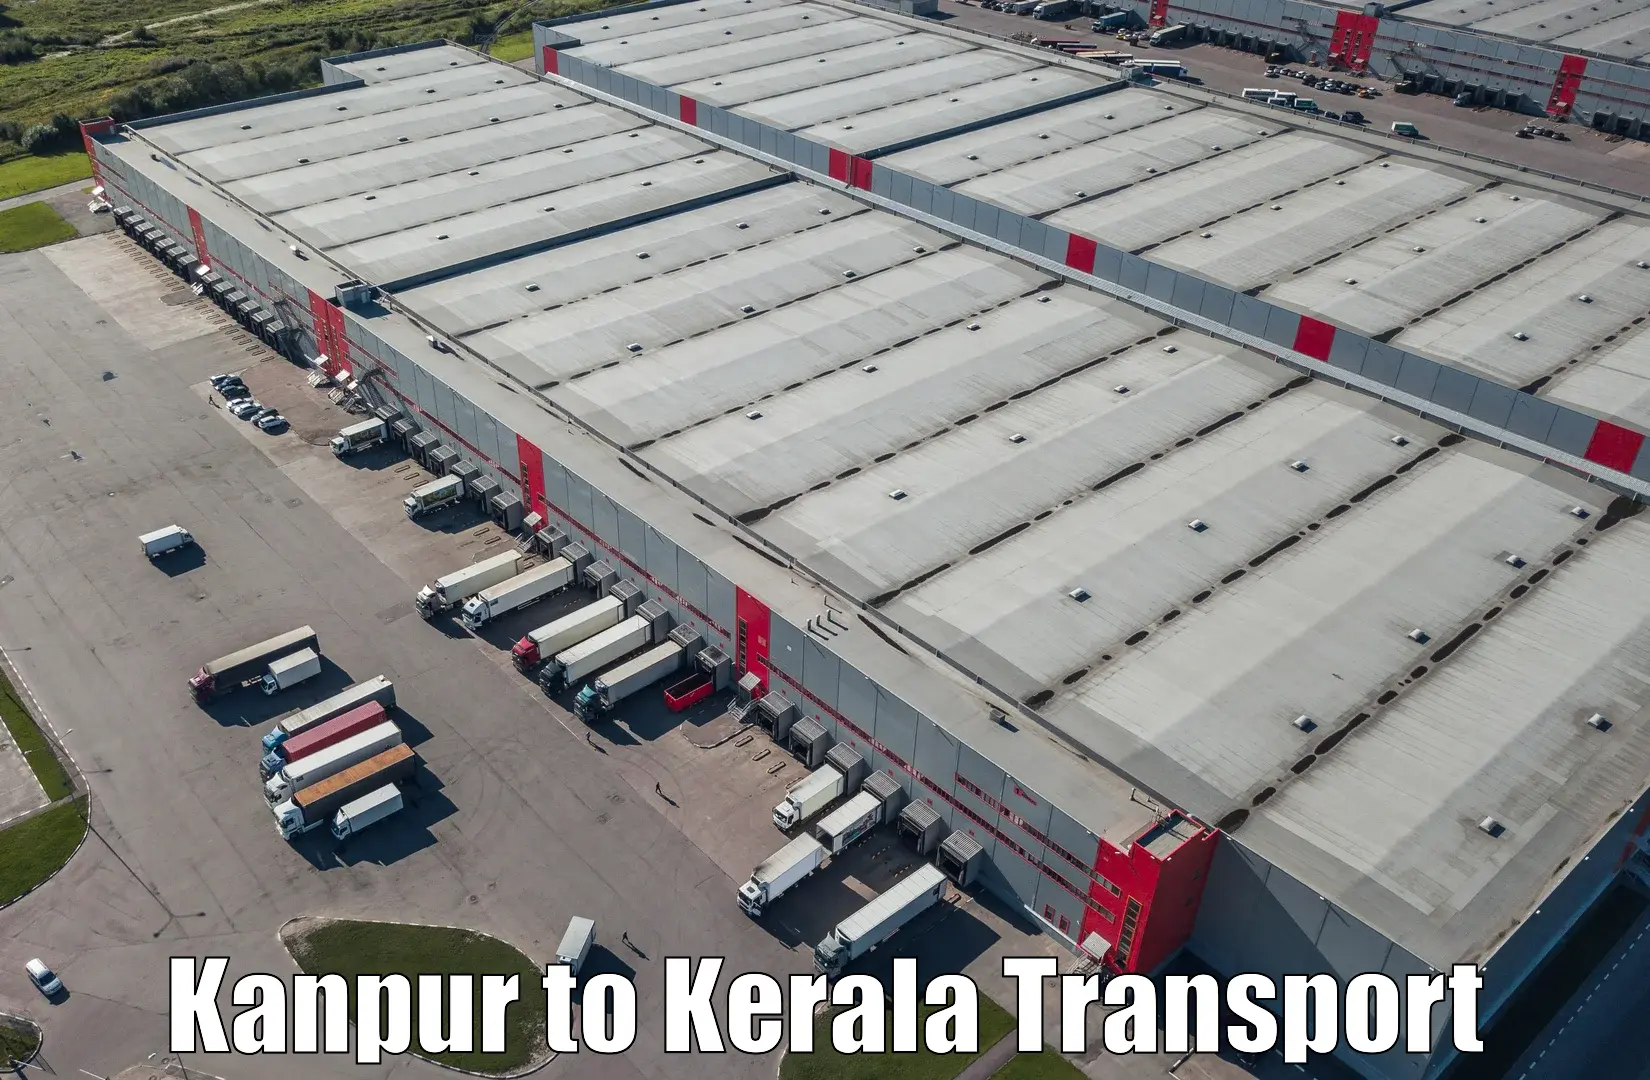 Shipping partner Kanpur to Panthalam